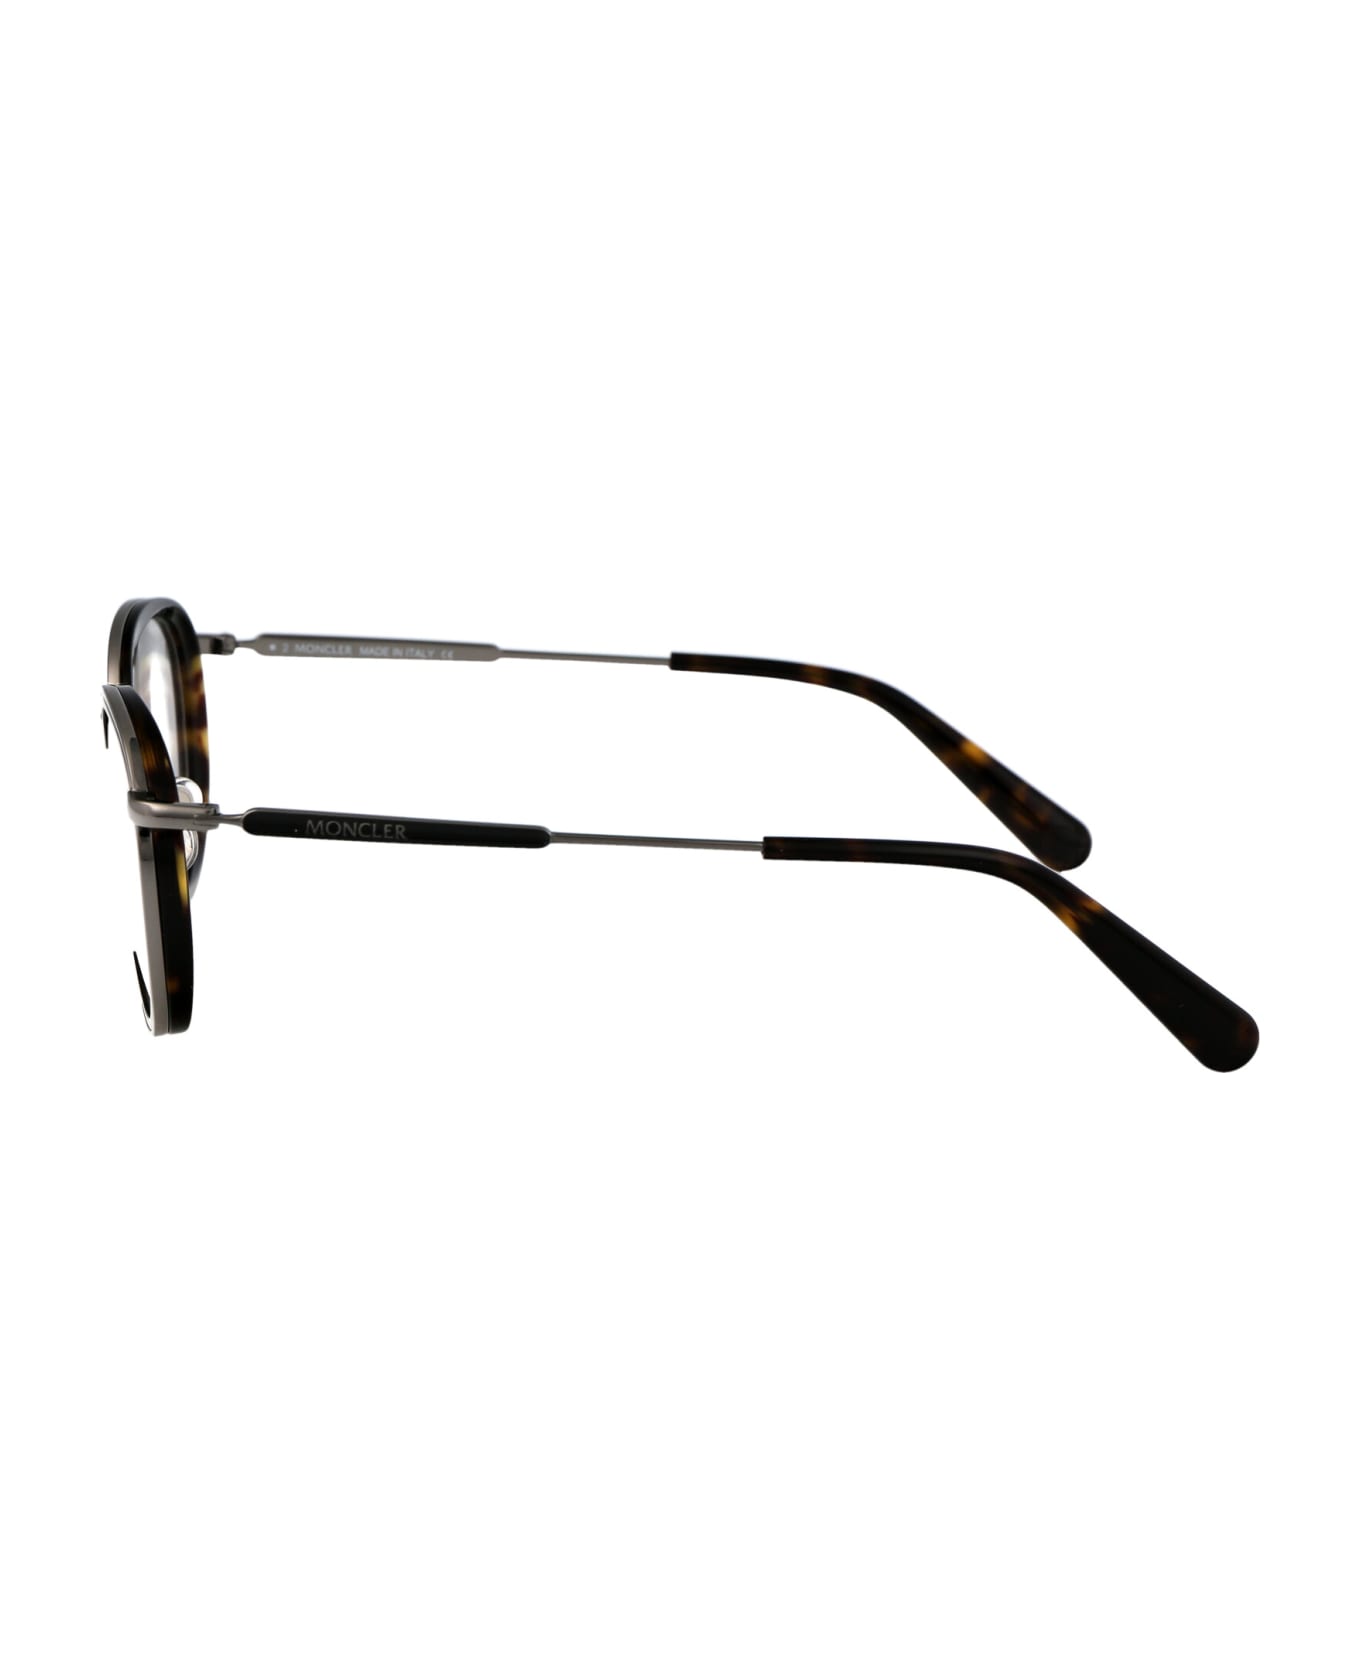 Moncler Eyewear Ml5153 Glasses - 052 Avana Scura アイウェア